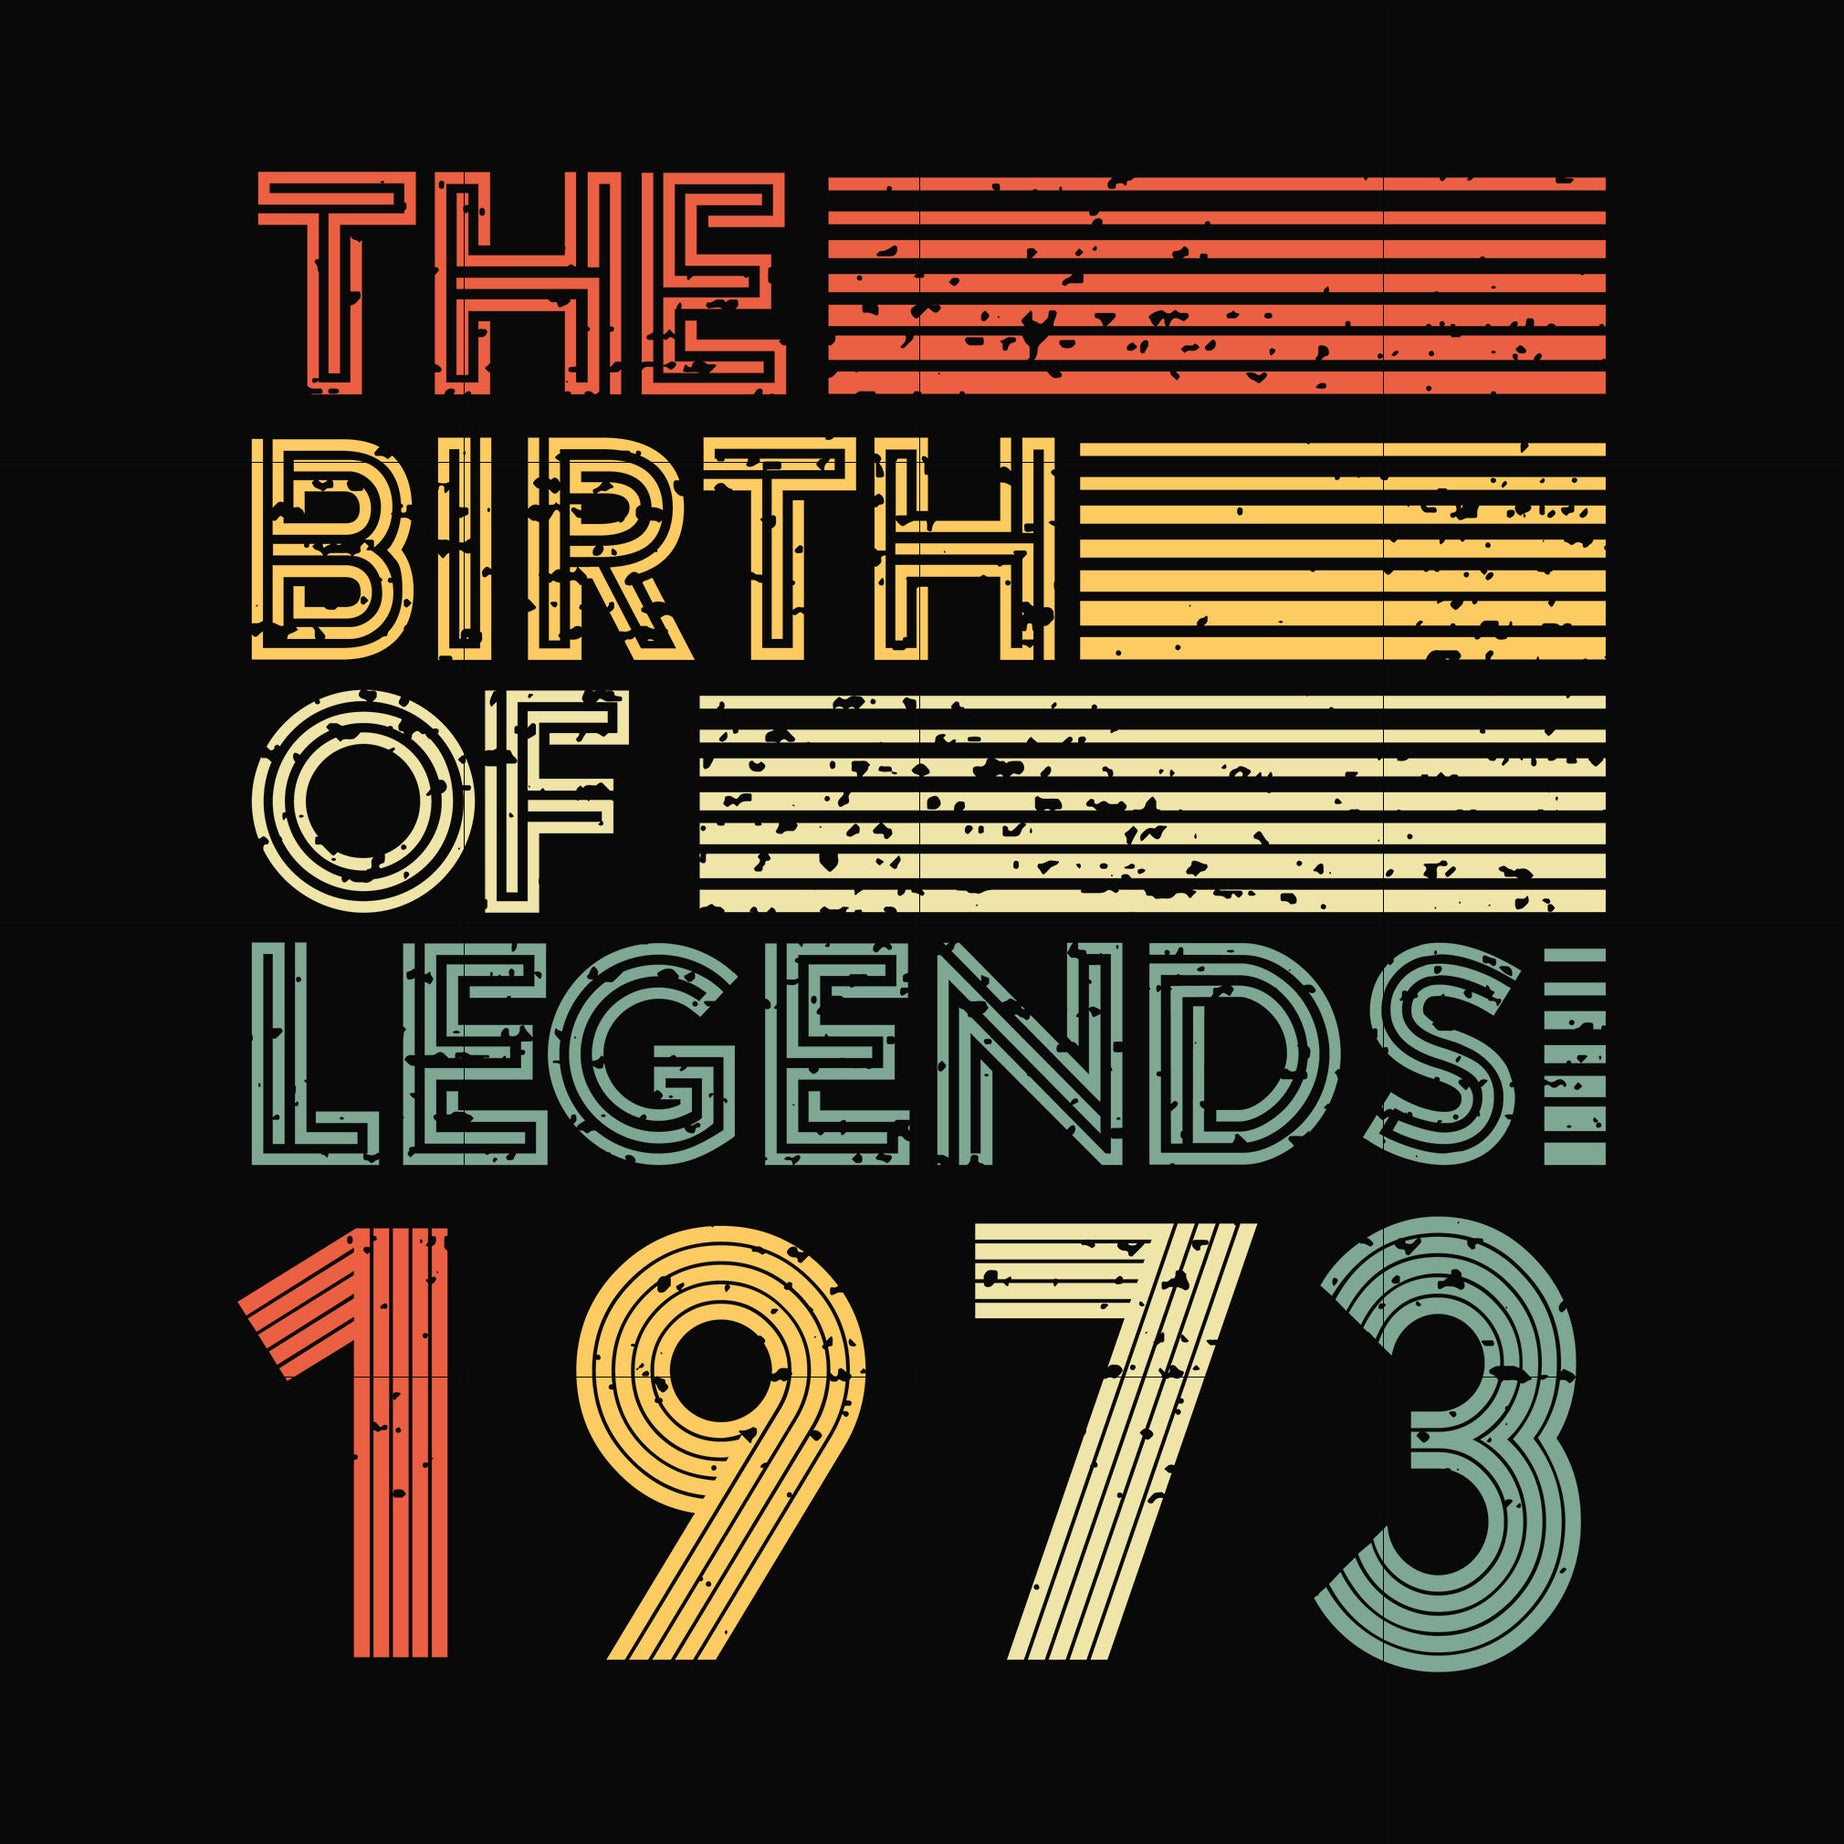 The birth of legends 1973 svg, png, dxf, eps digital file NBD0075